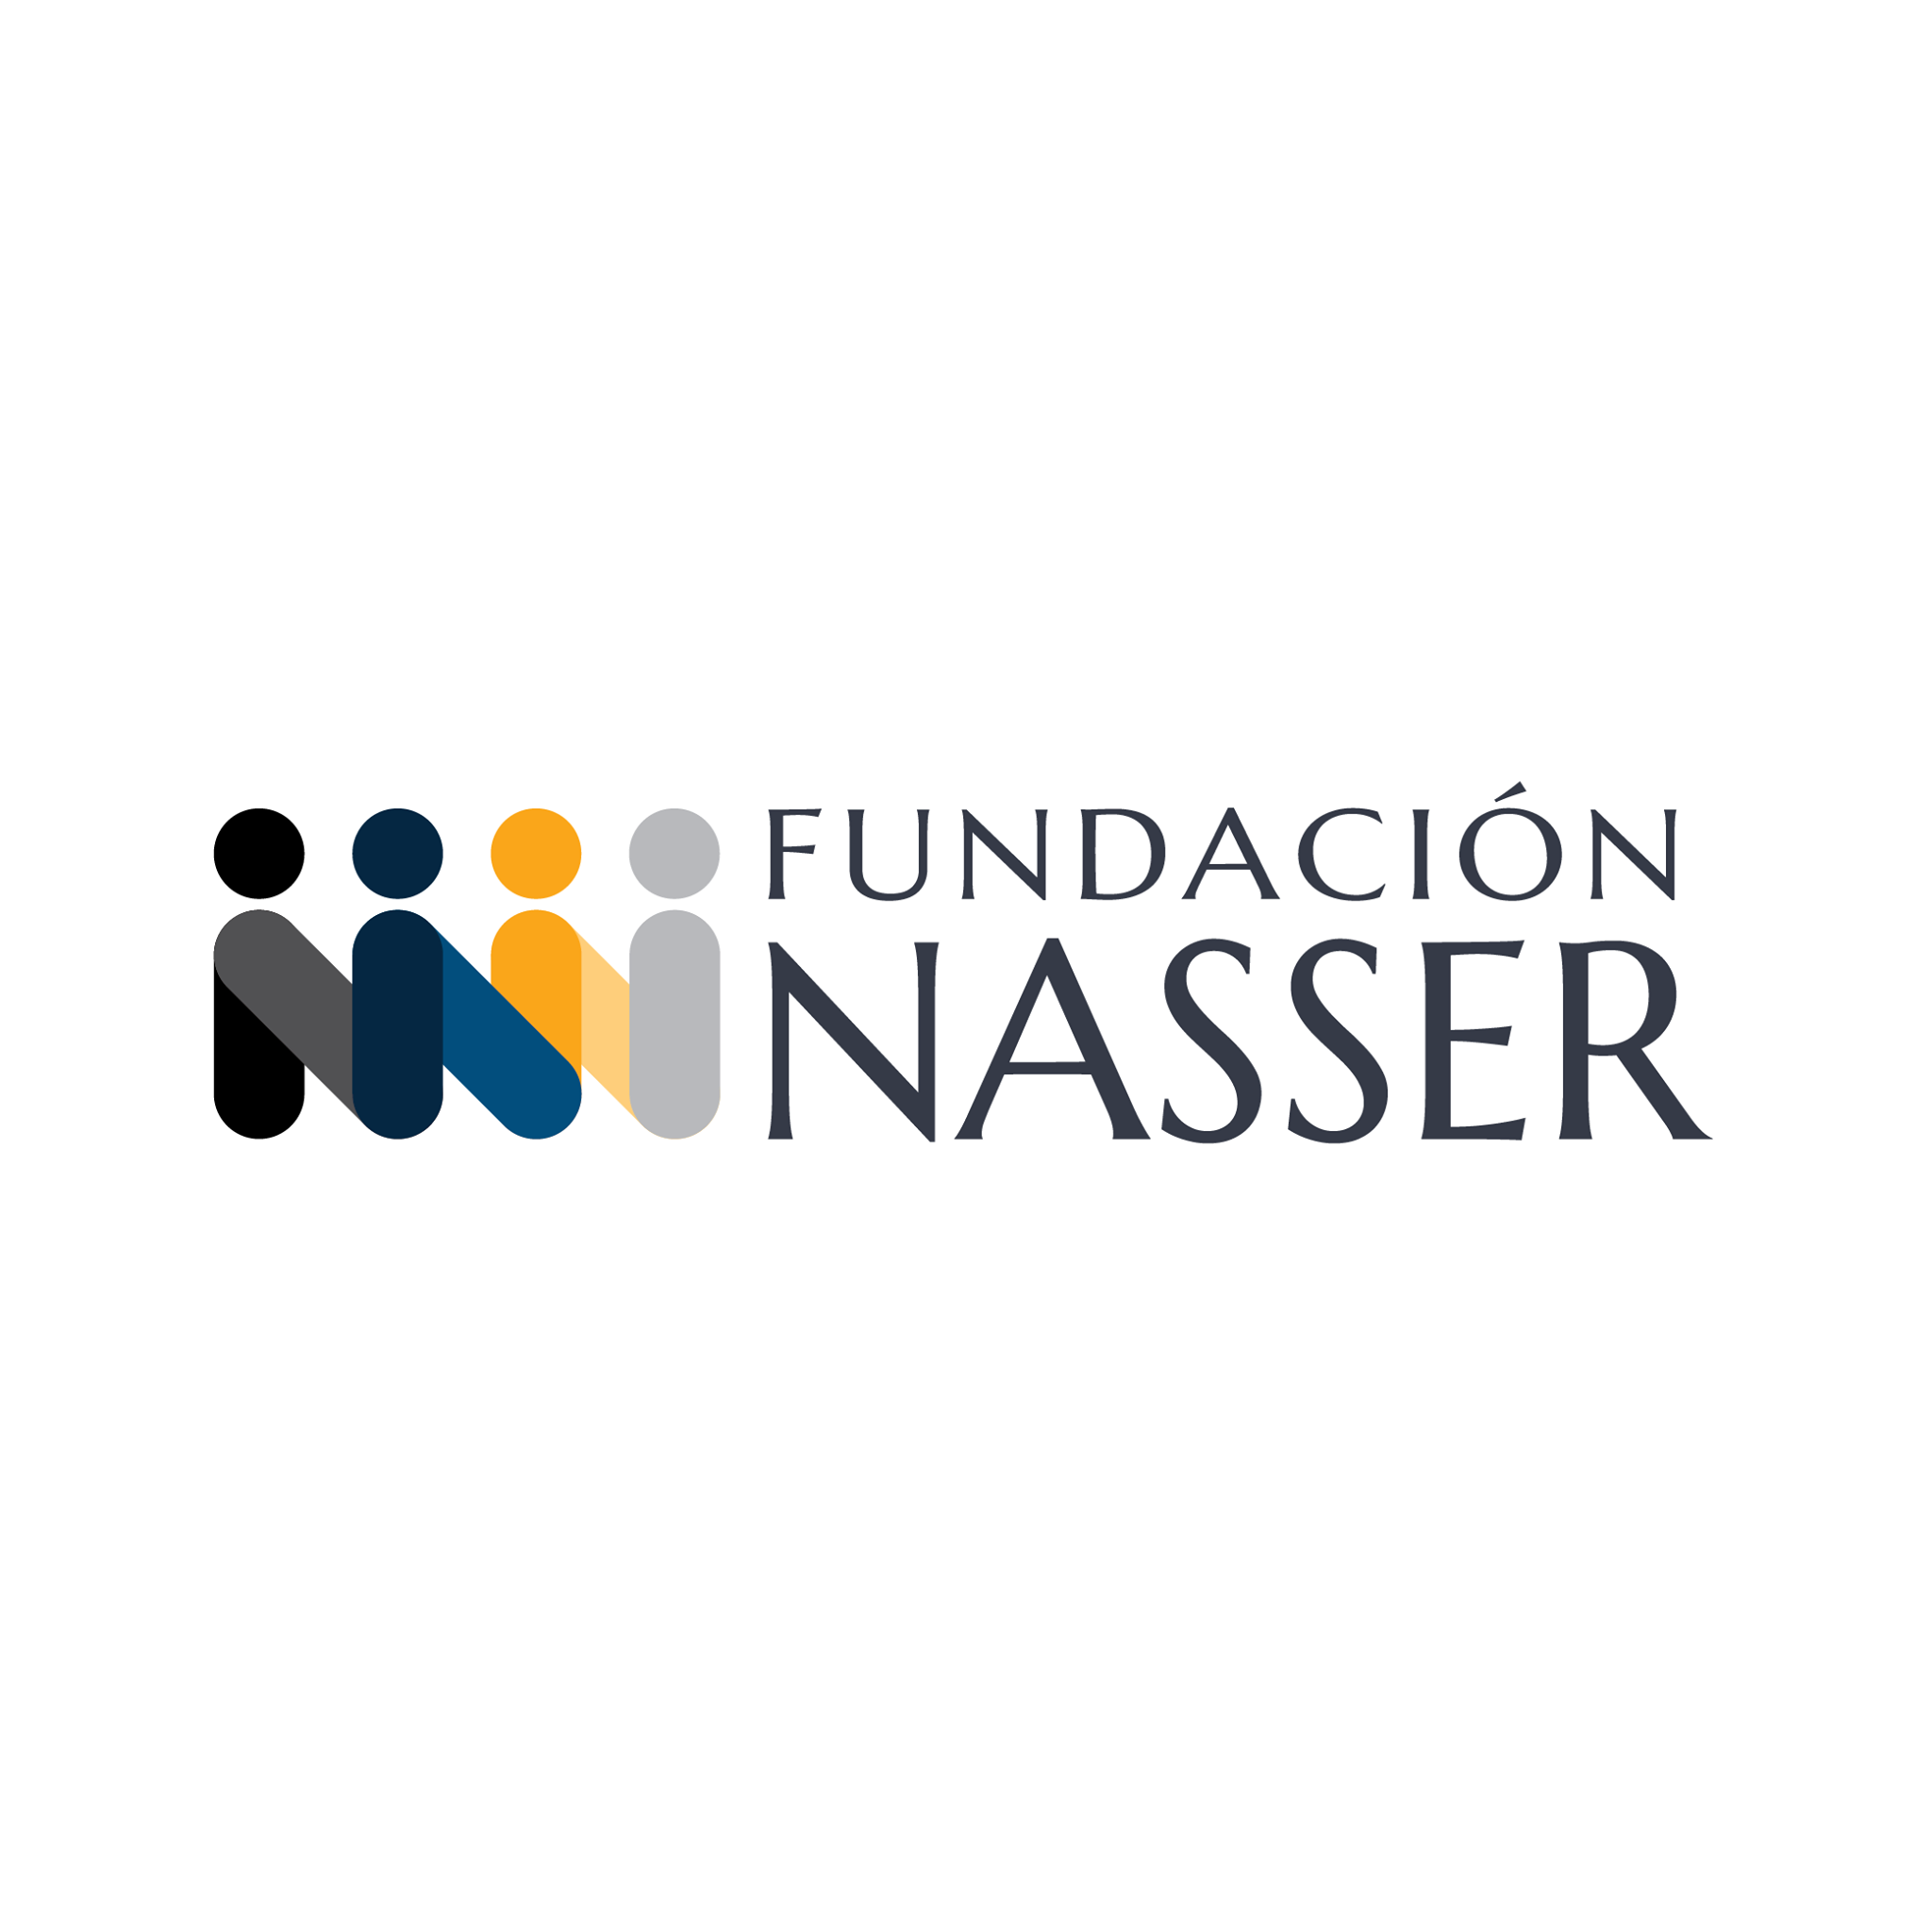 Fundacion Nasser